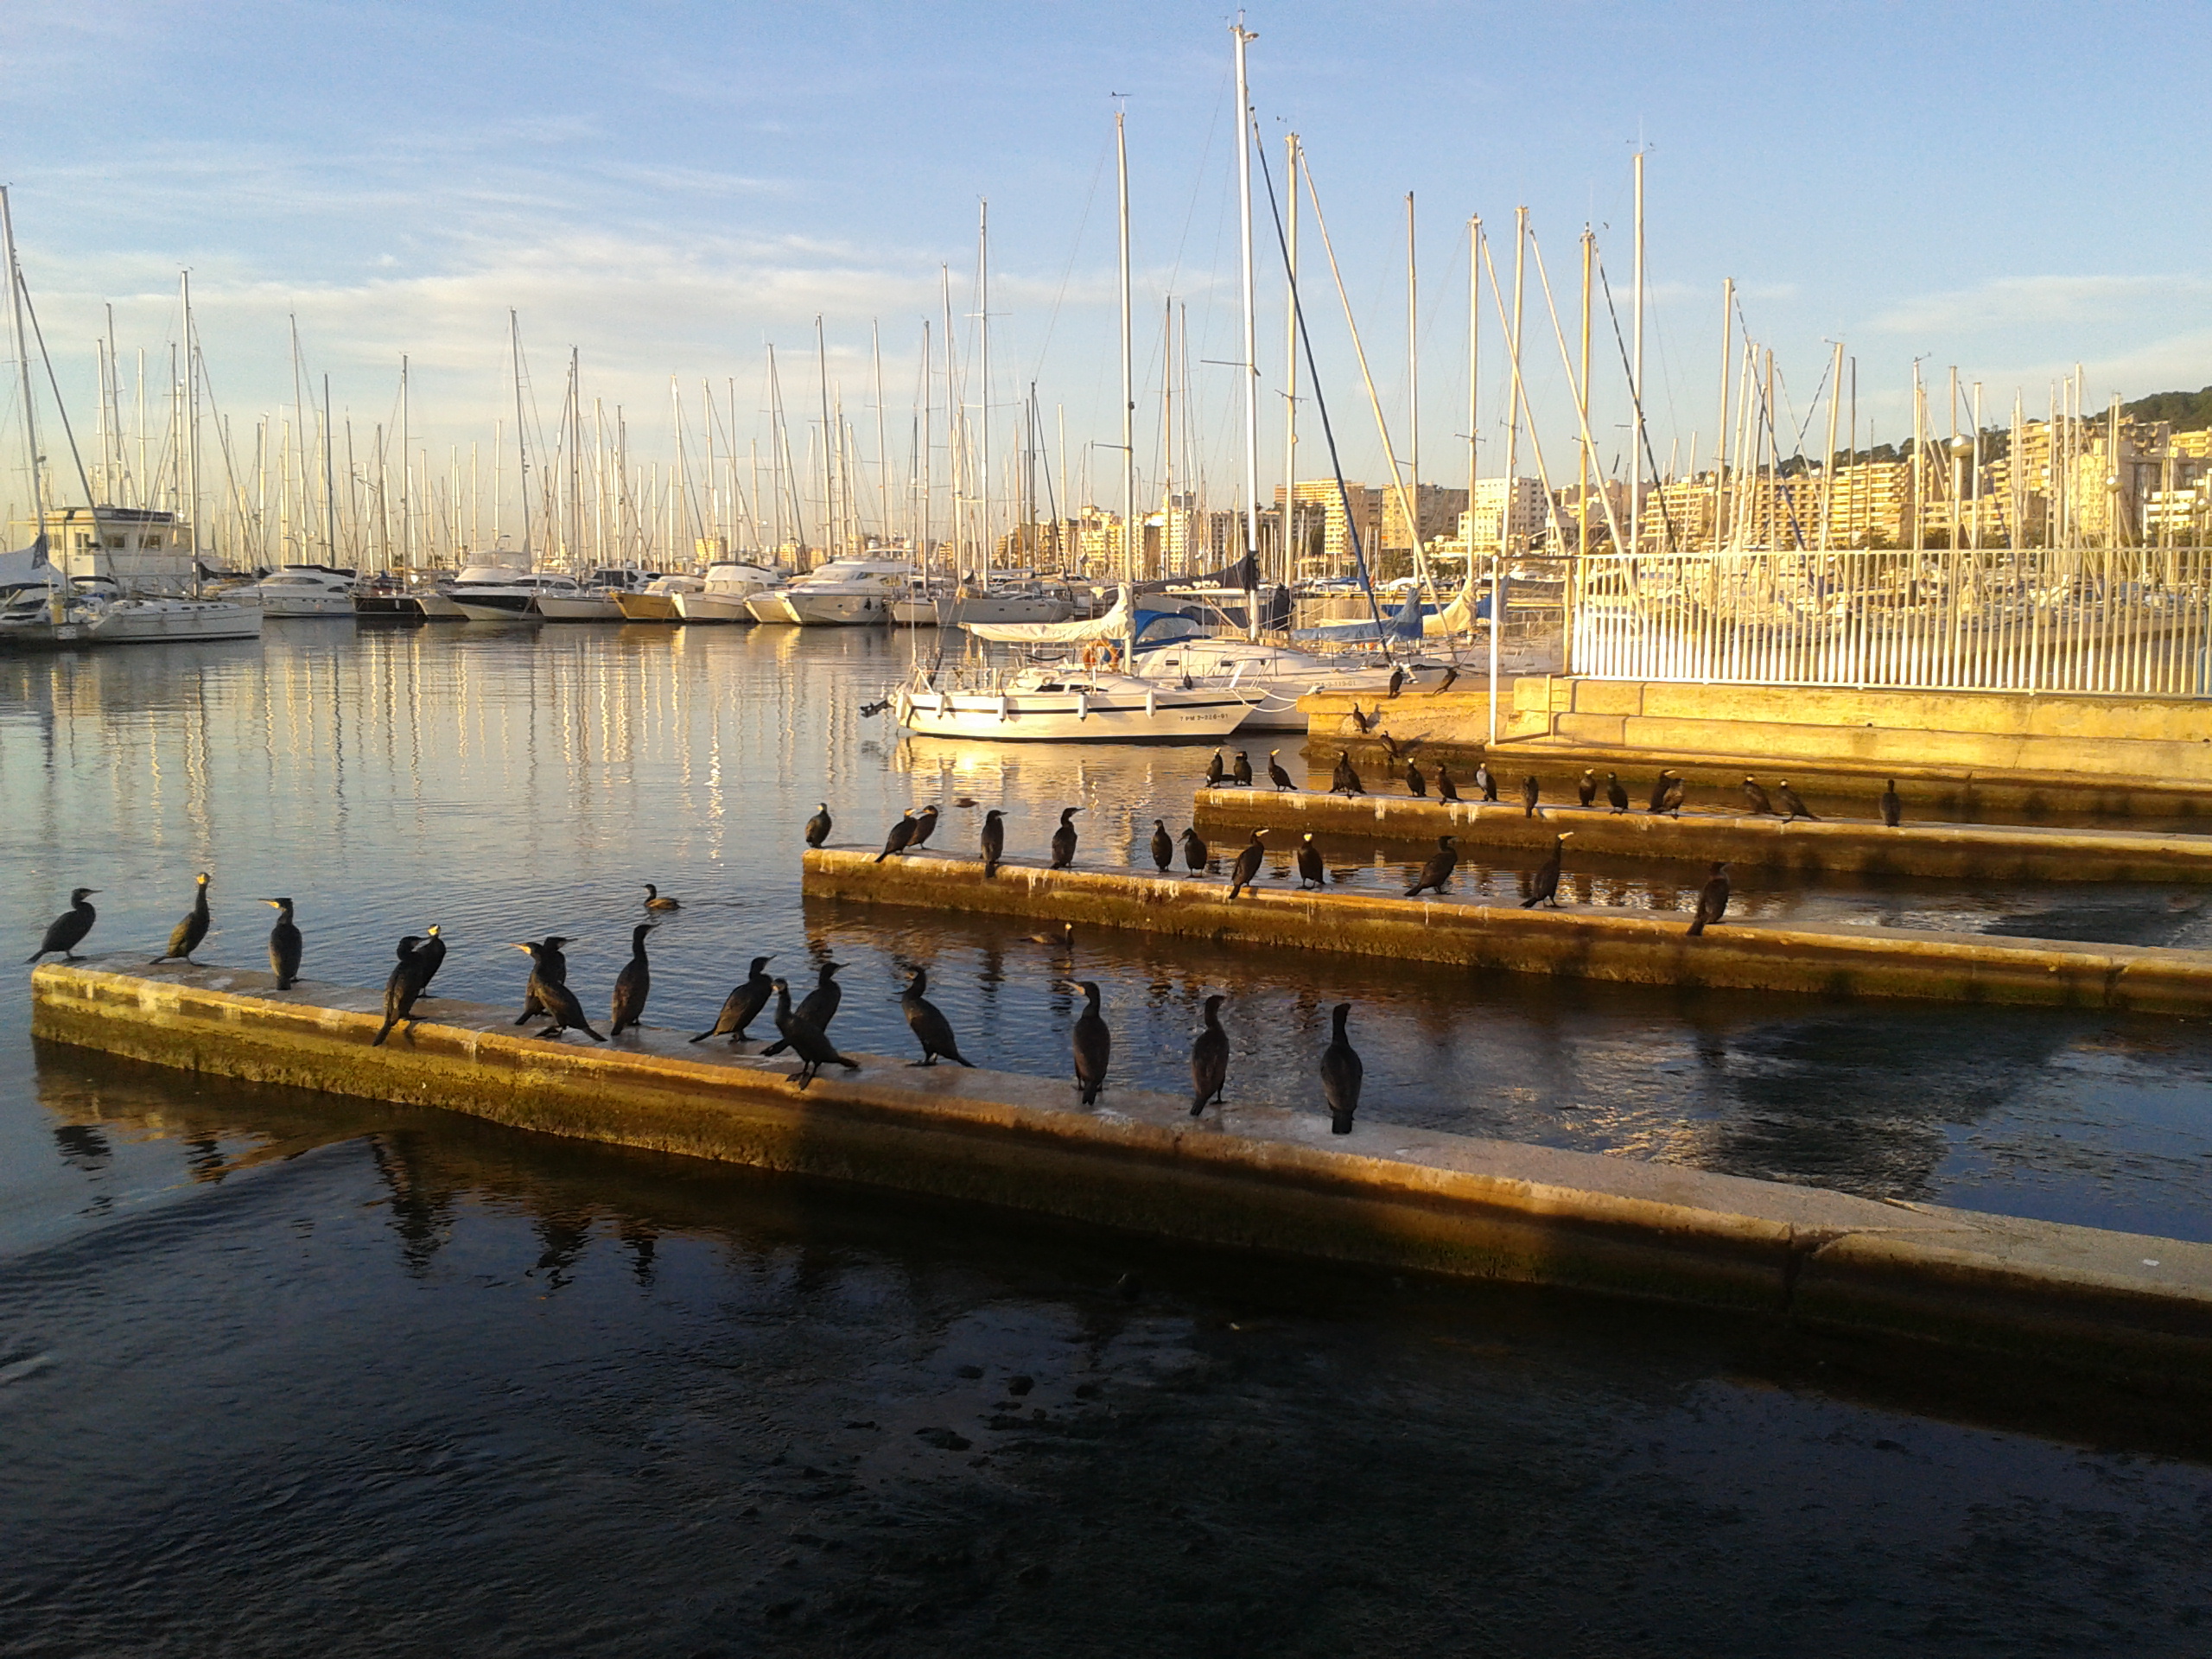 Buena calidad del agua litoral en los puertos de interés general de Baleares